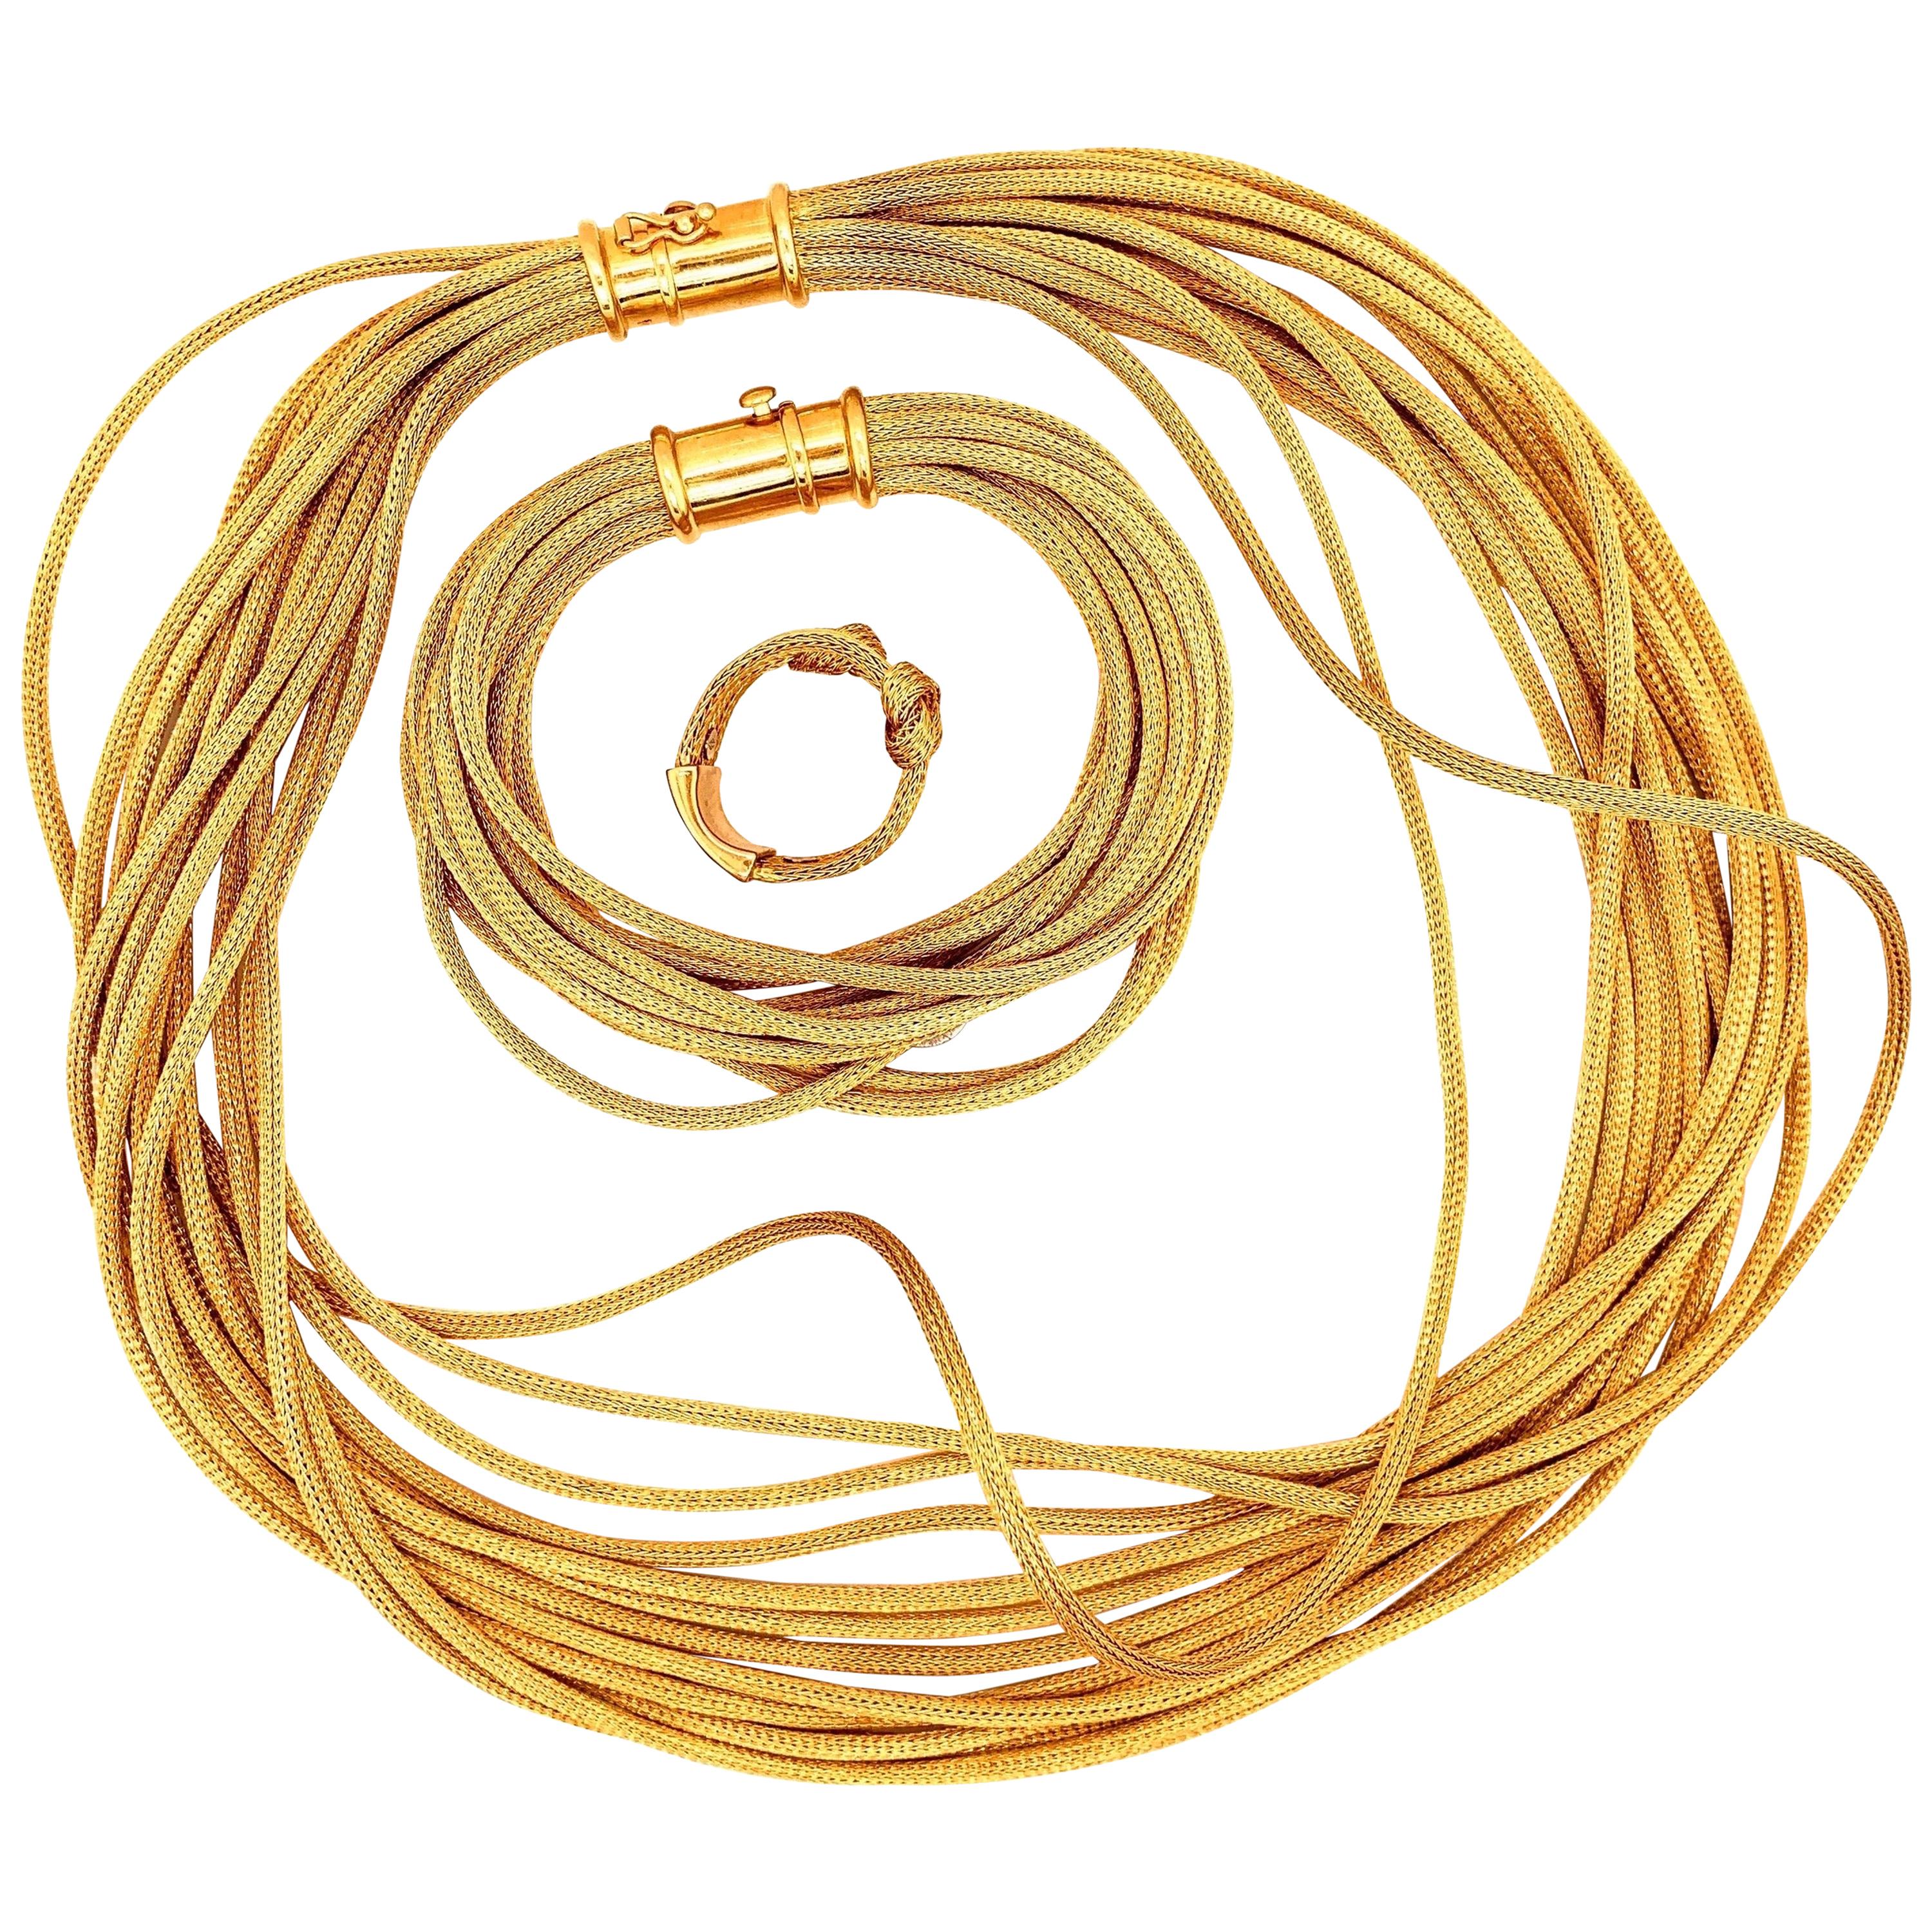 18 Karat Gold Fox Tail Necklace Bracelet Ring Rope Set